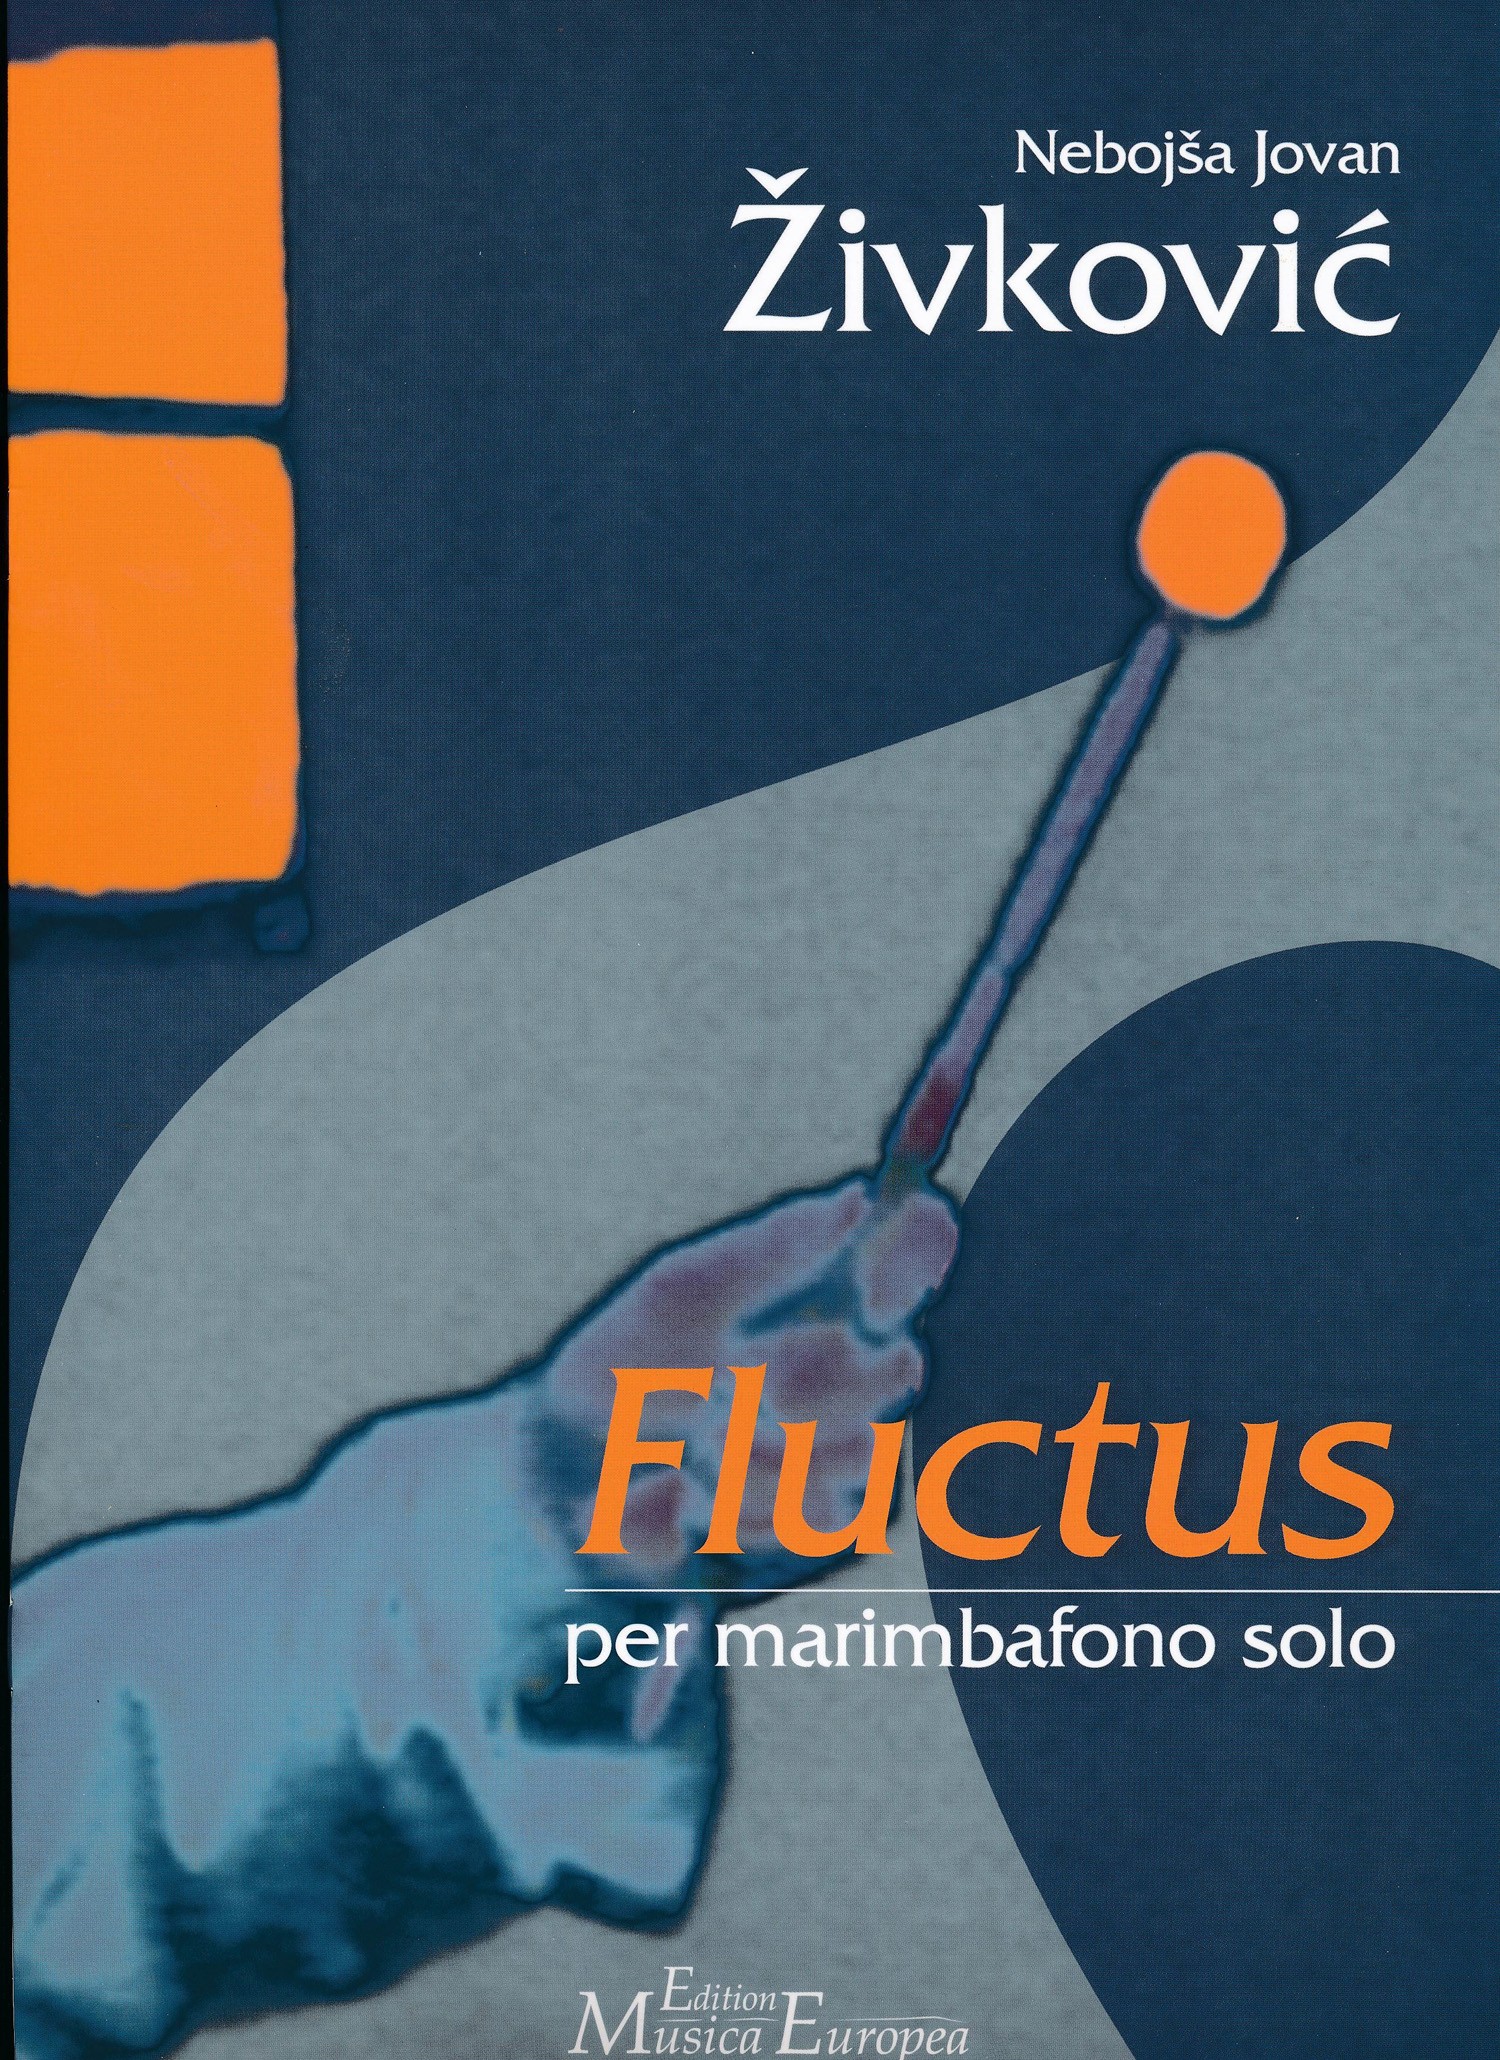 Fluctus by Nebojsa Zivkovic